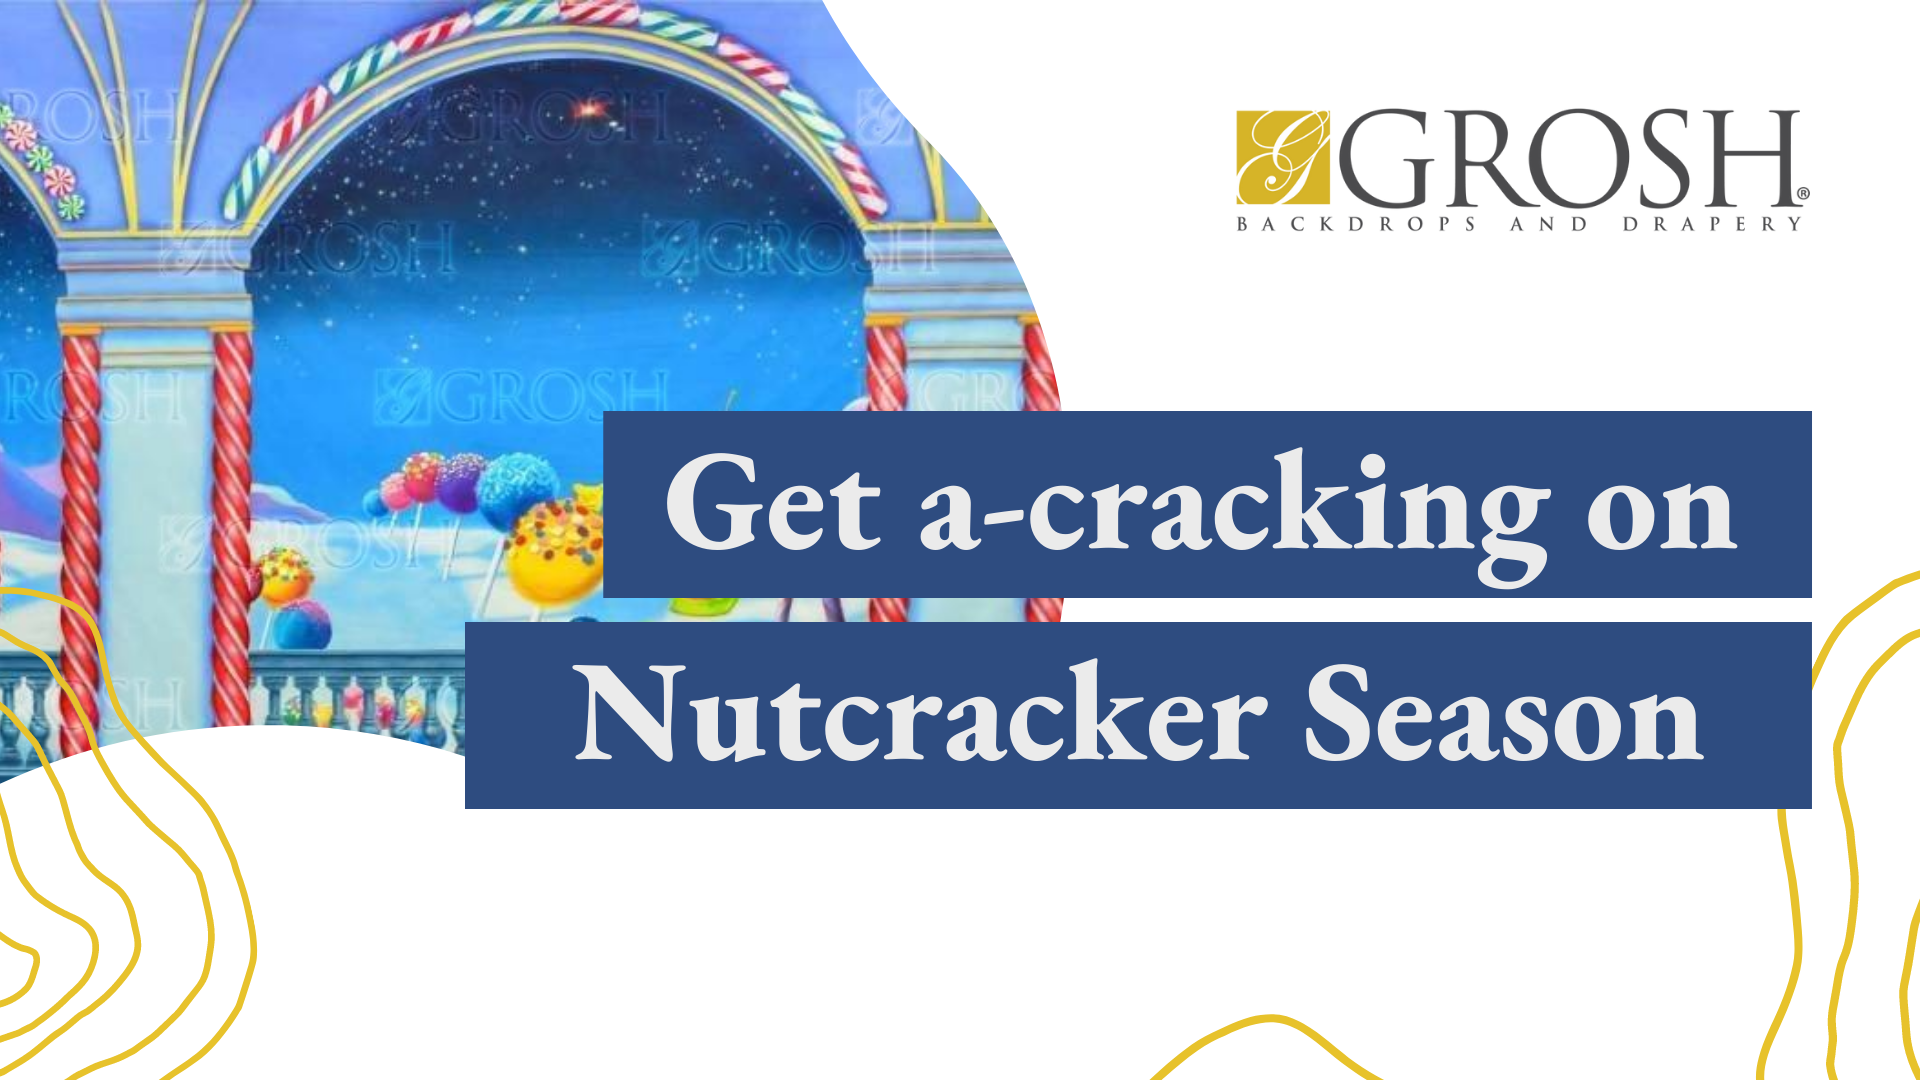 Get a cracking on Nutcracker Season